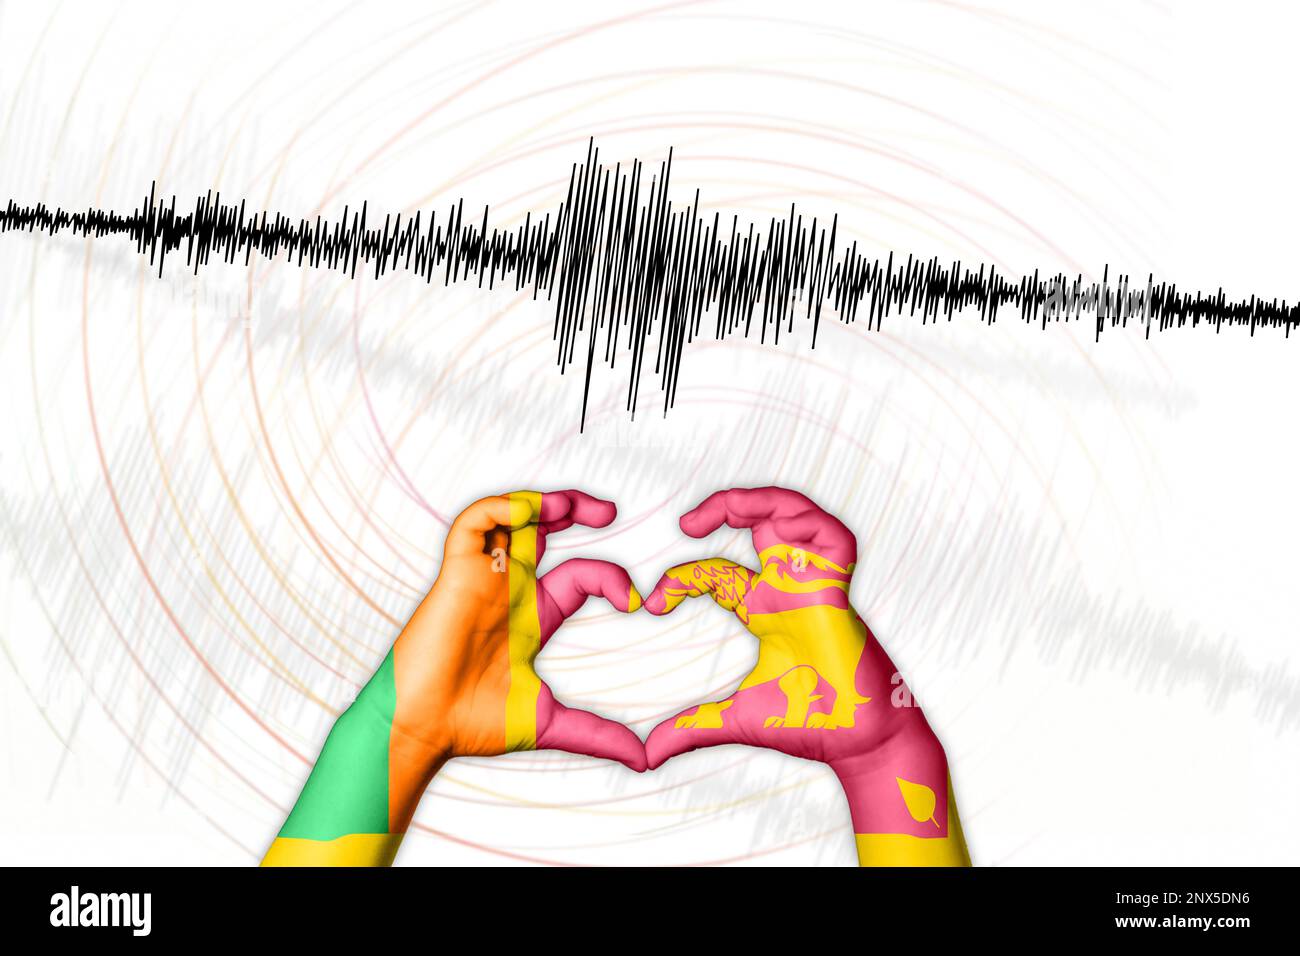 Erdbeben durch seismische Aktivität Sri Lanka Symbol der Heart Richter Scale Stockfoto